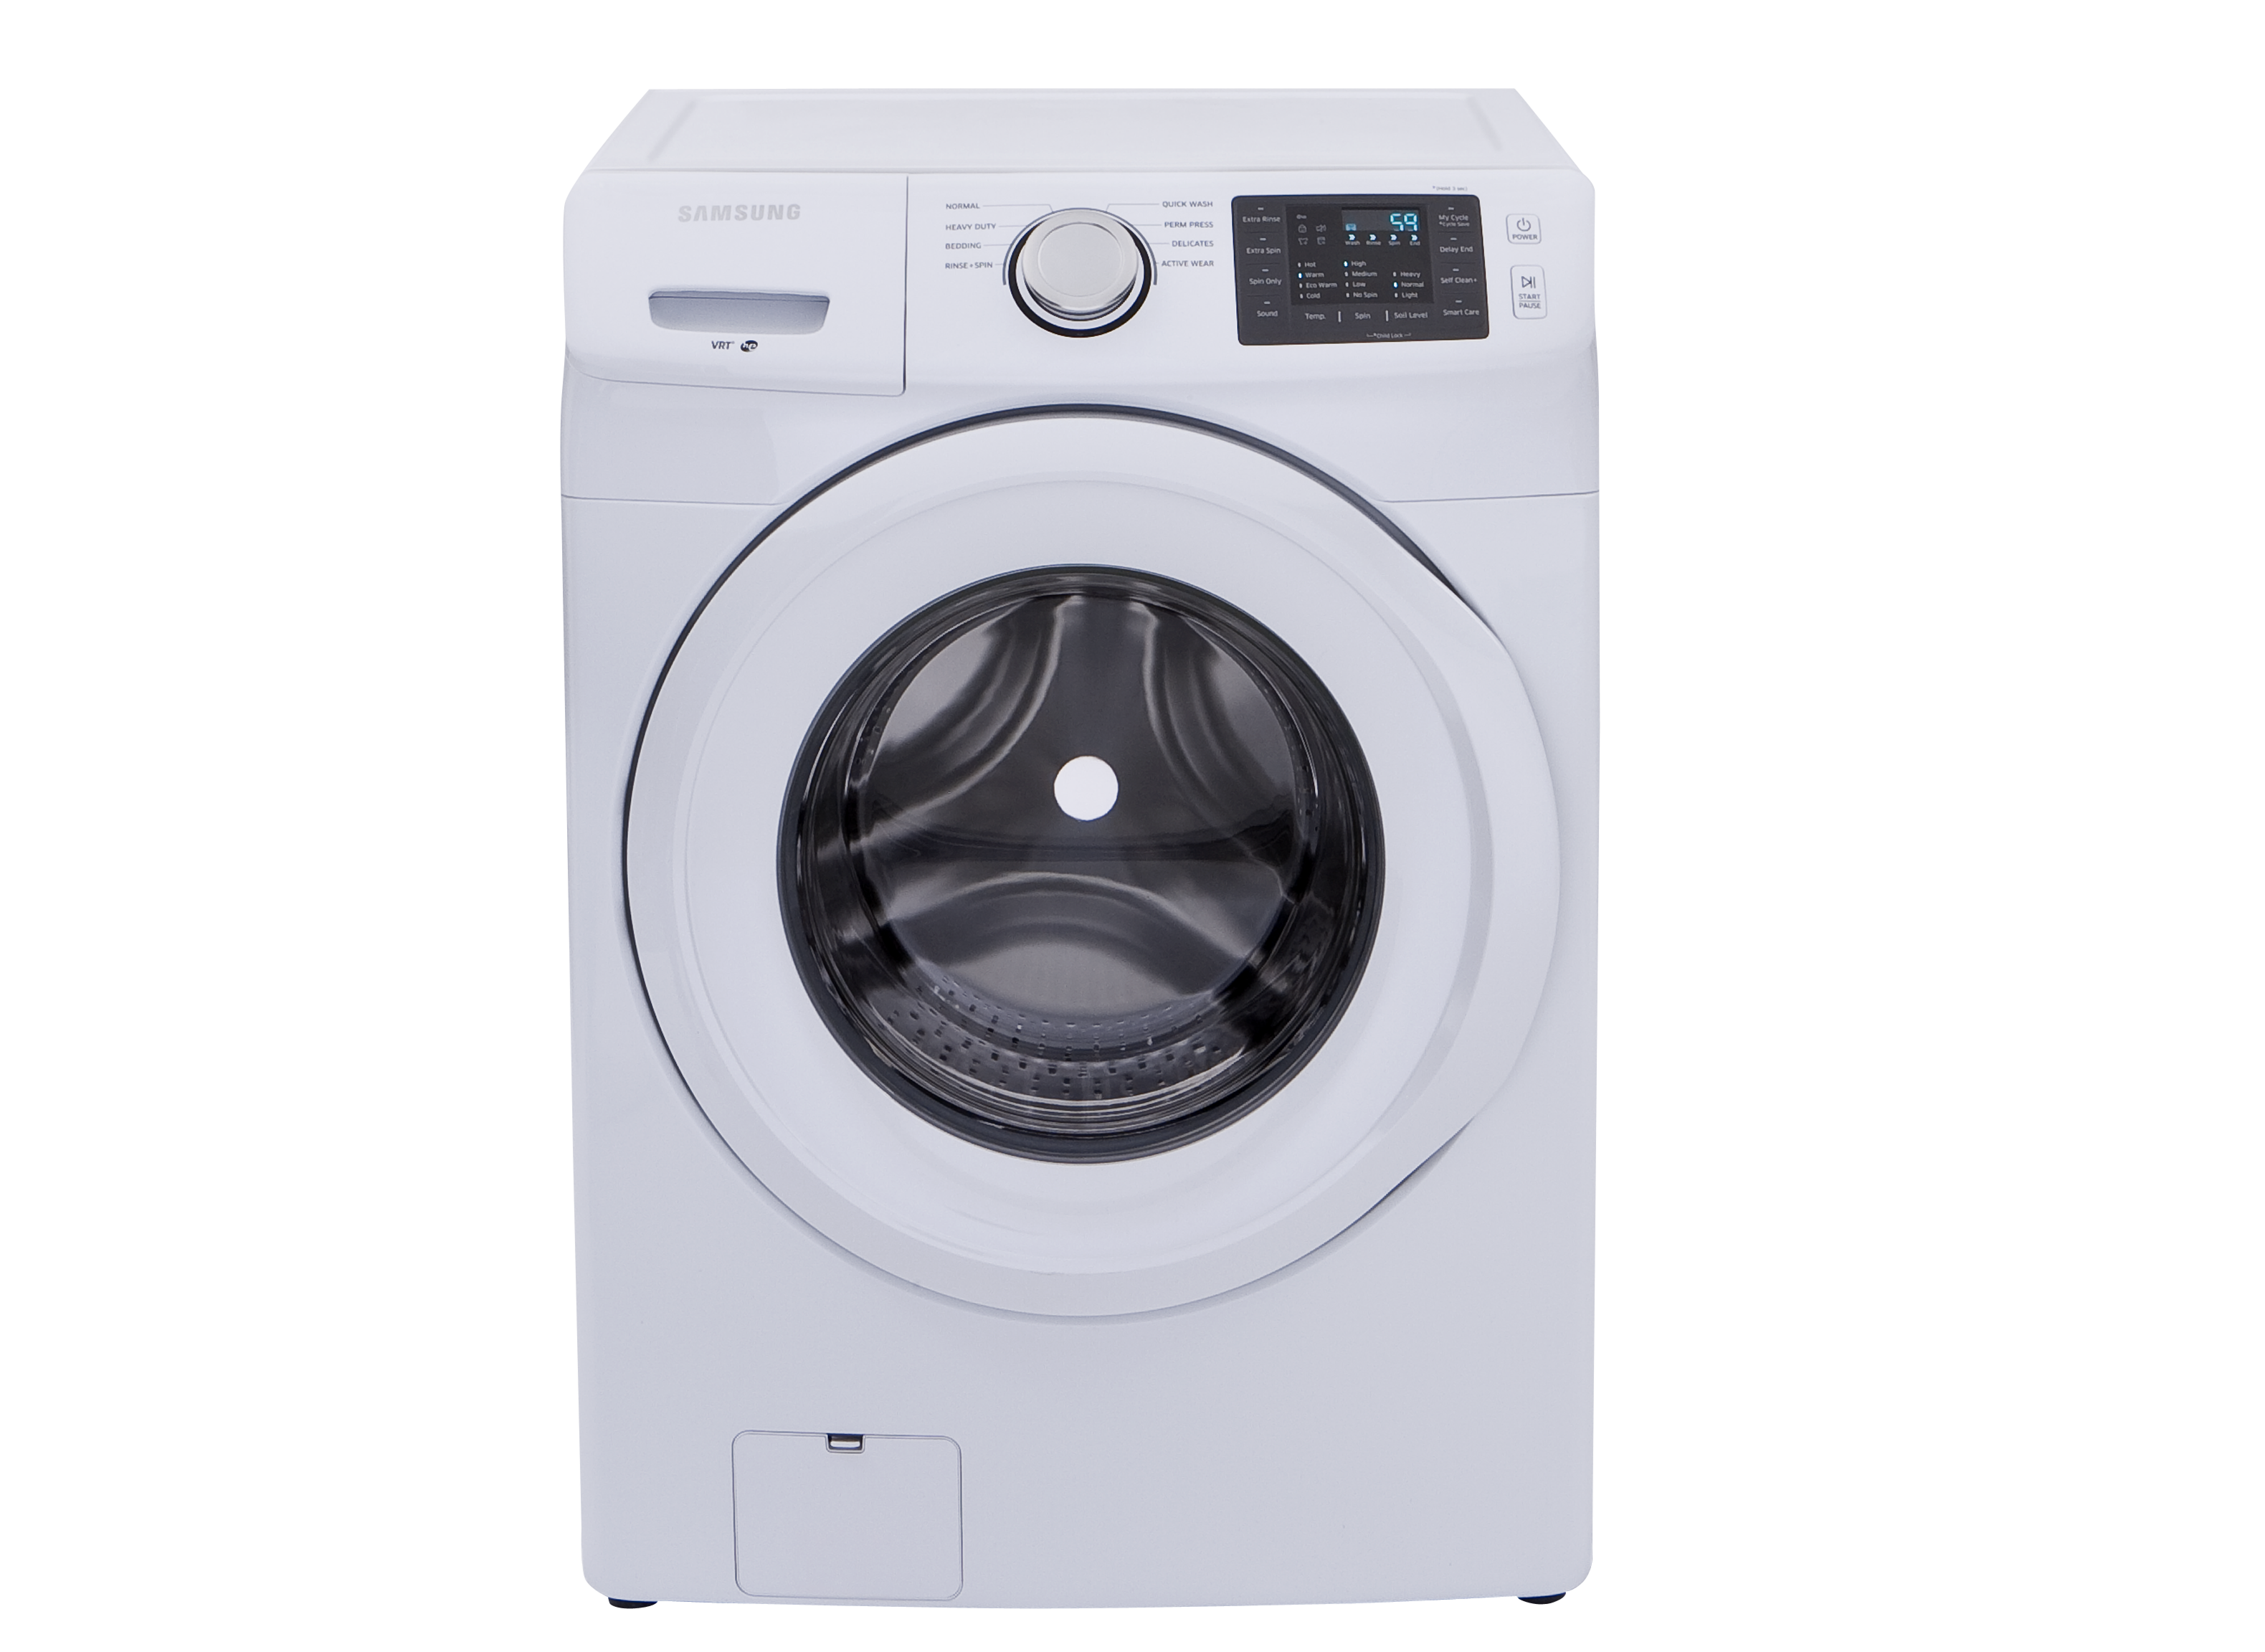 Samsung Wf42h5000aw Washing Machine Consumer Reports